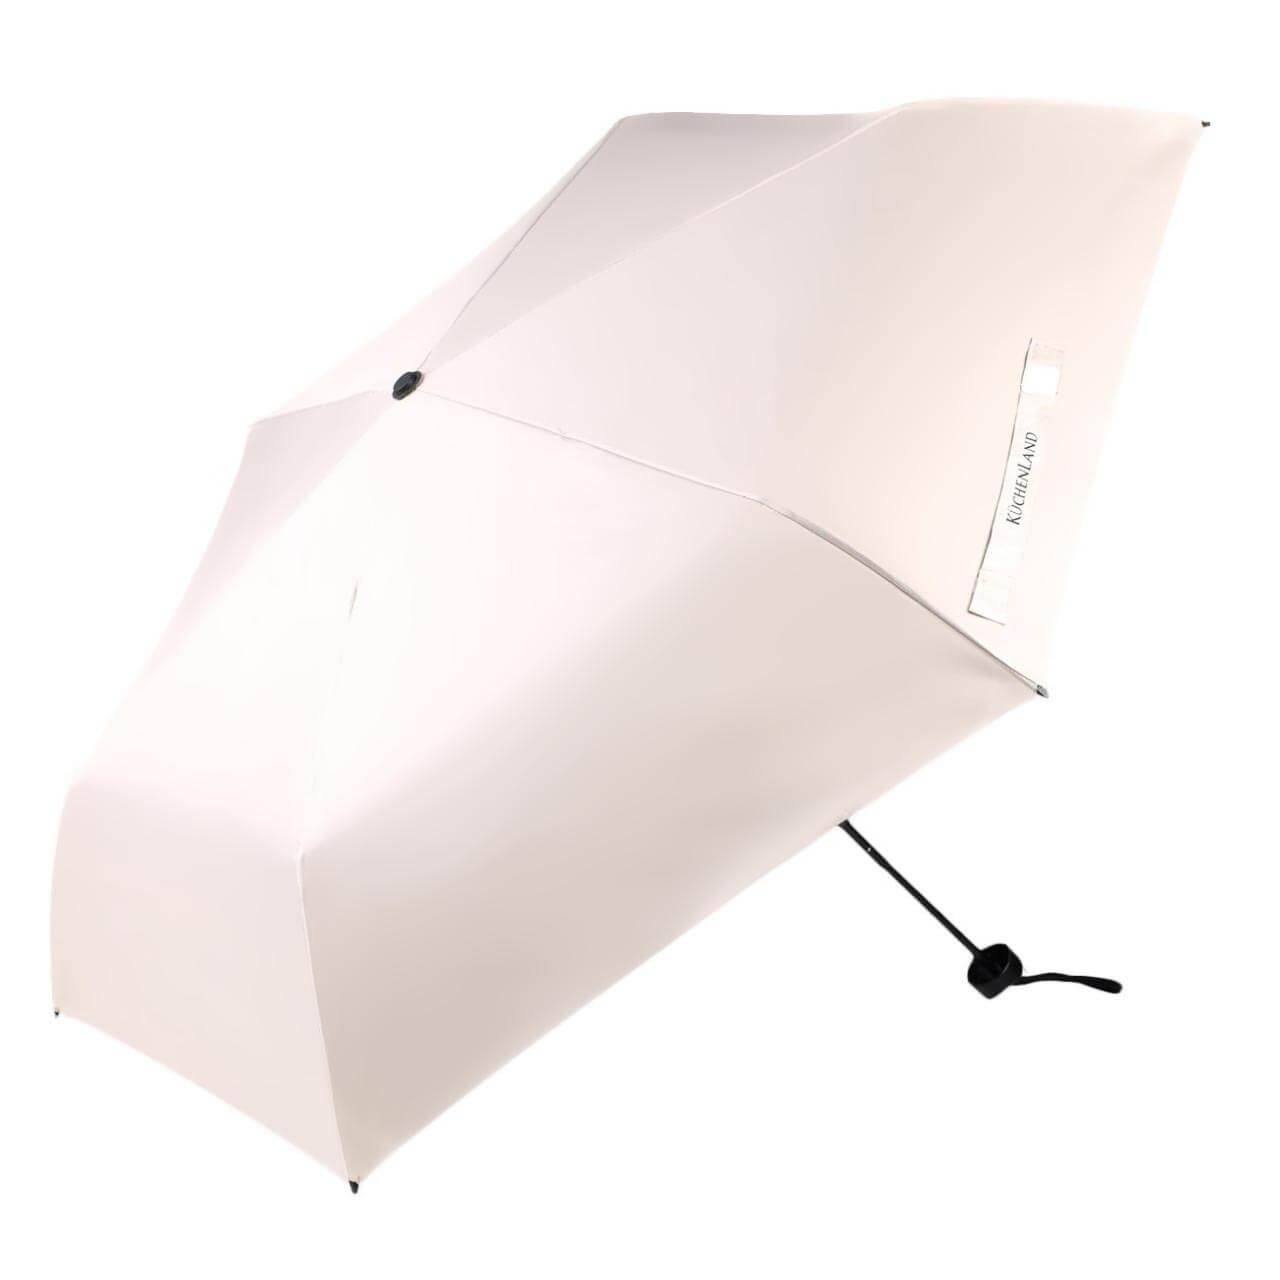 Зонт, 52 см, складной, двусторонний, эпонж, бежево-черный, Rainy day изображение № 1